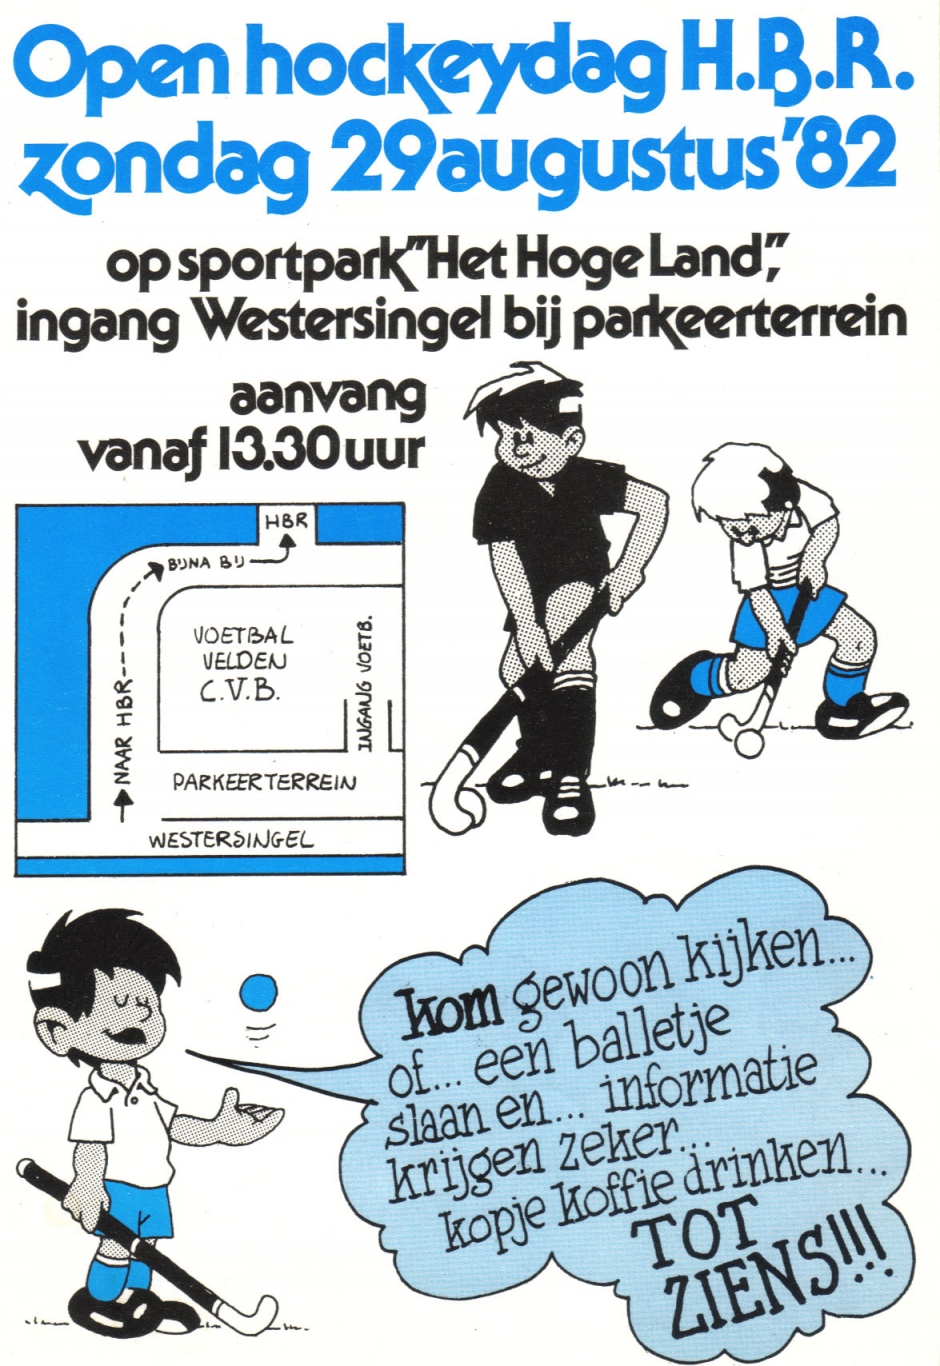 HBR promotie flyer 1982